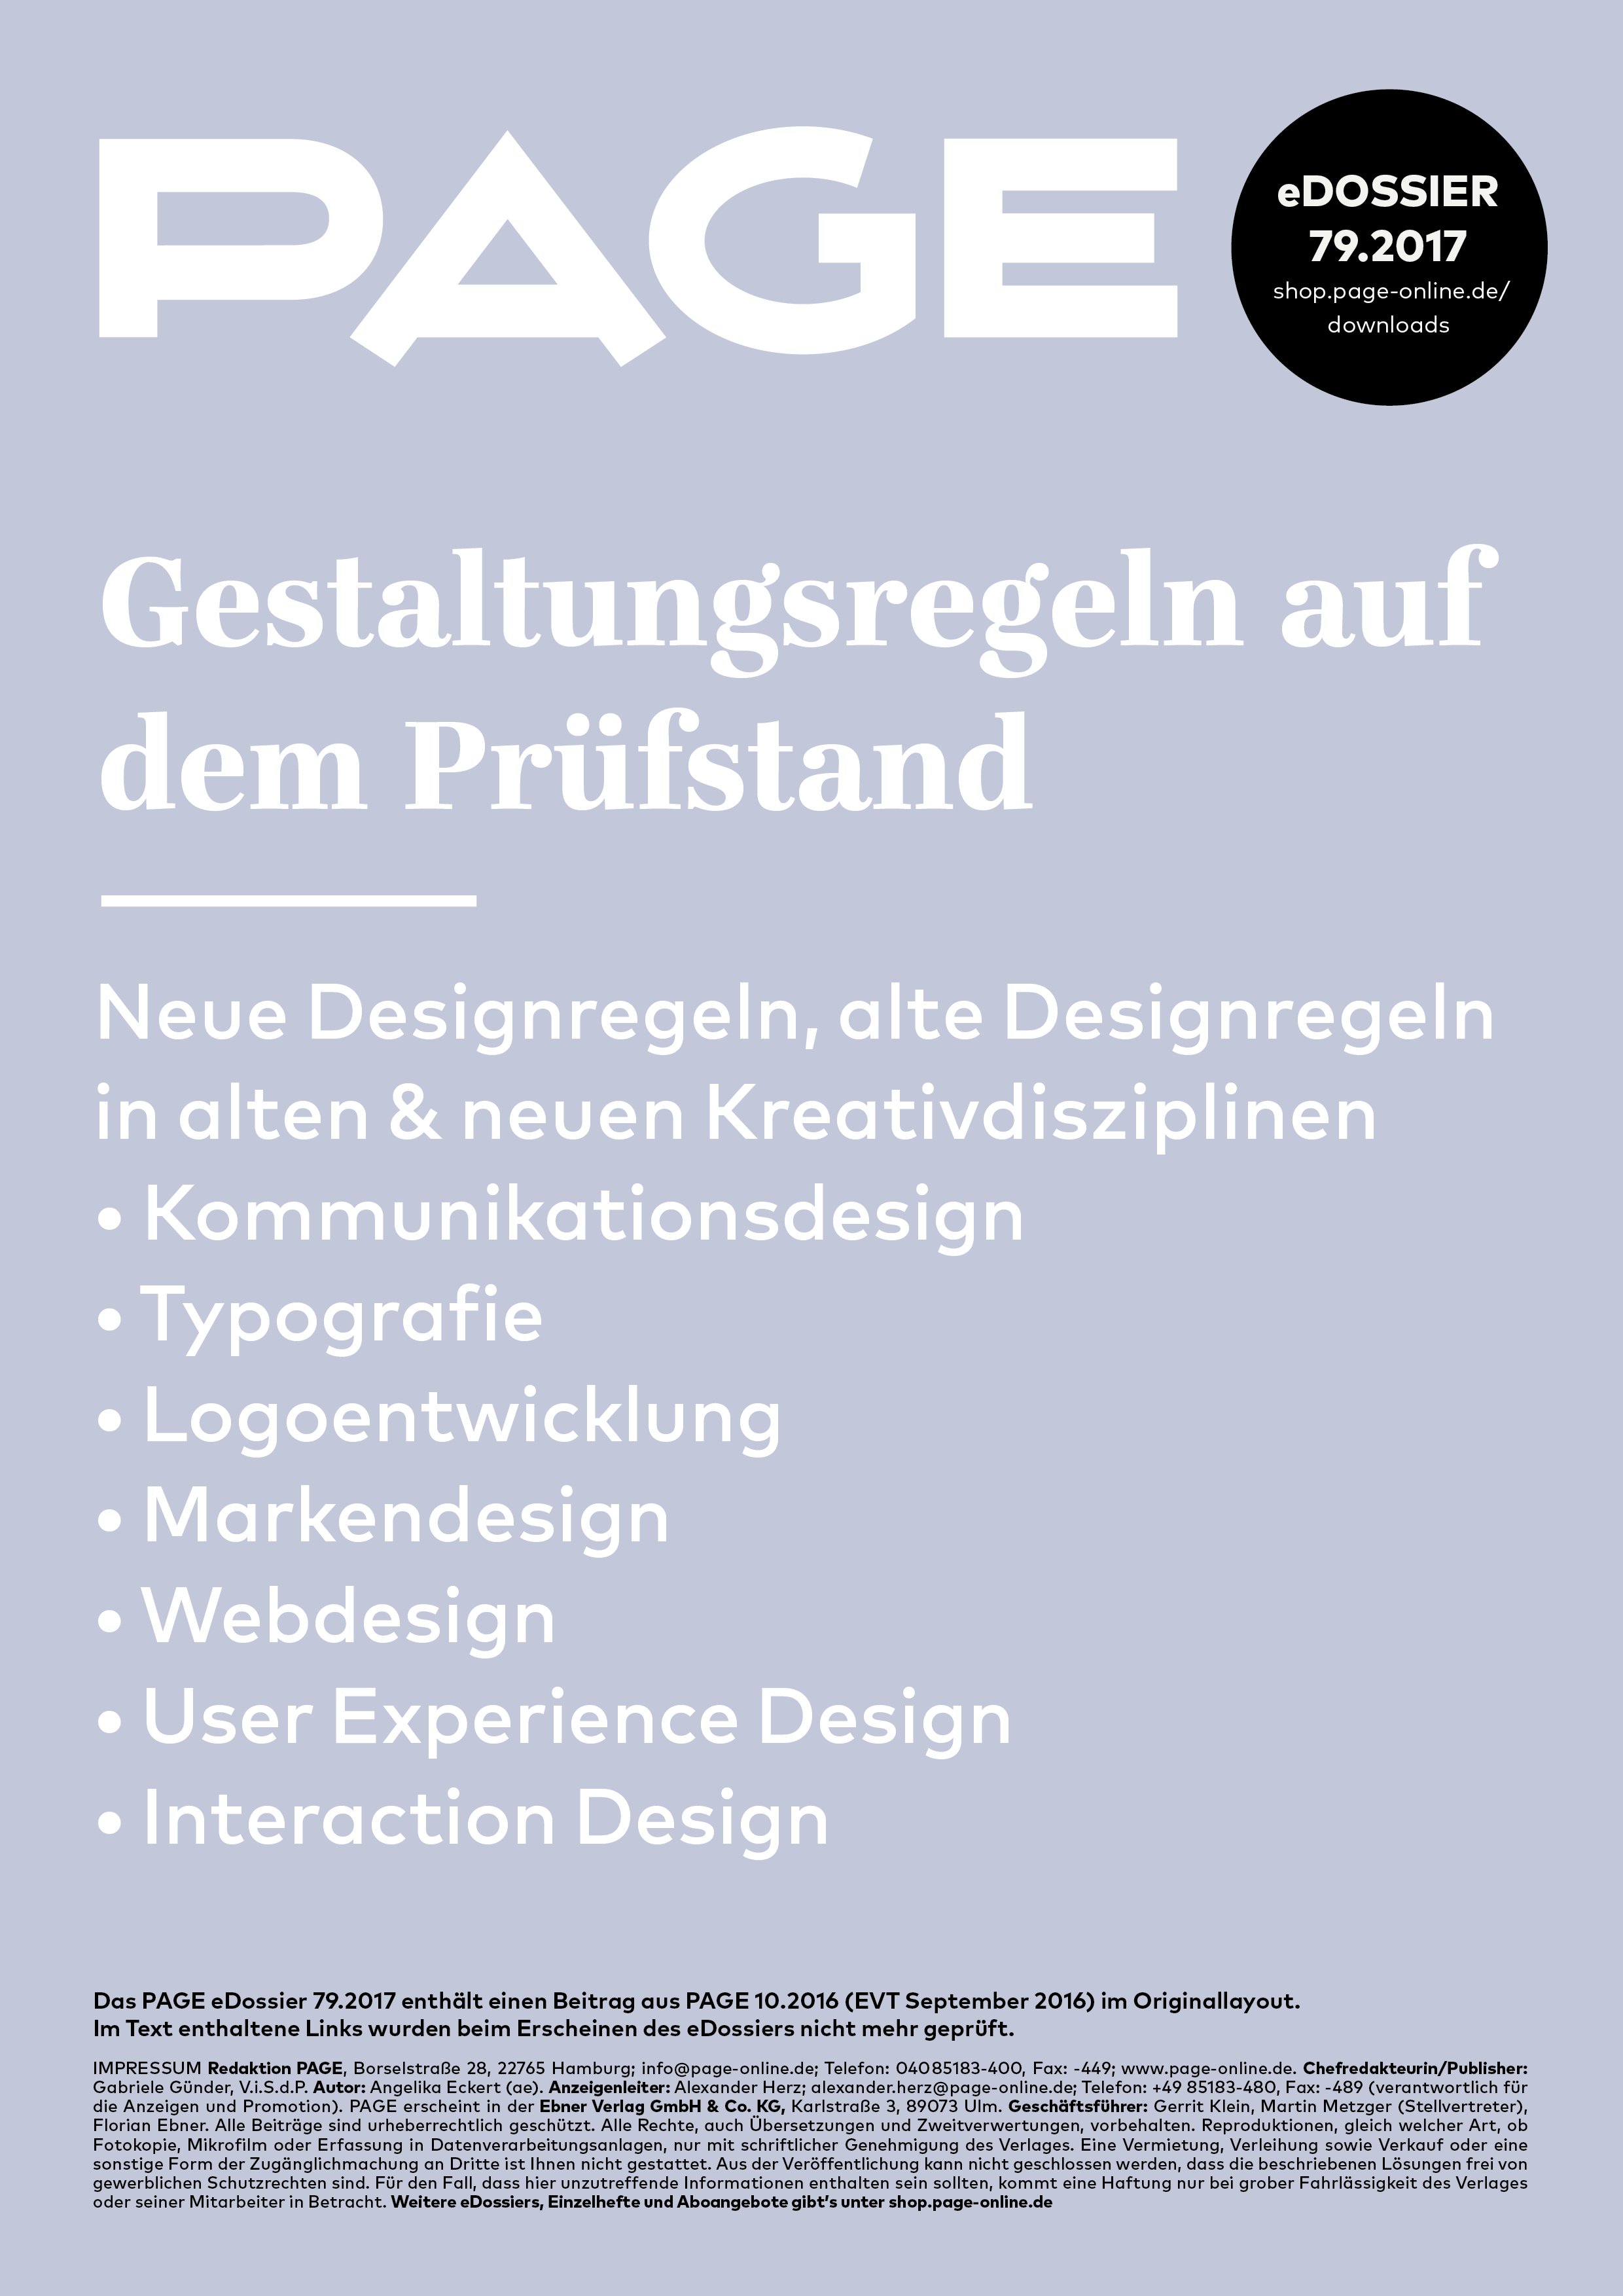 Typografie, Serifenschrift, Kommunikationsdesign, Kreative Berufe, Logoentwicklung, Weißraum